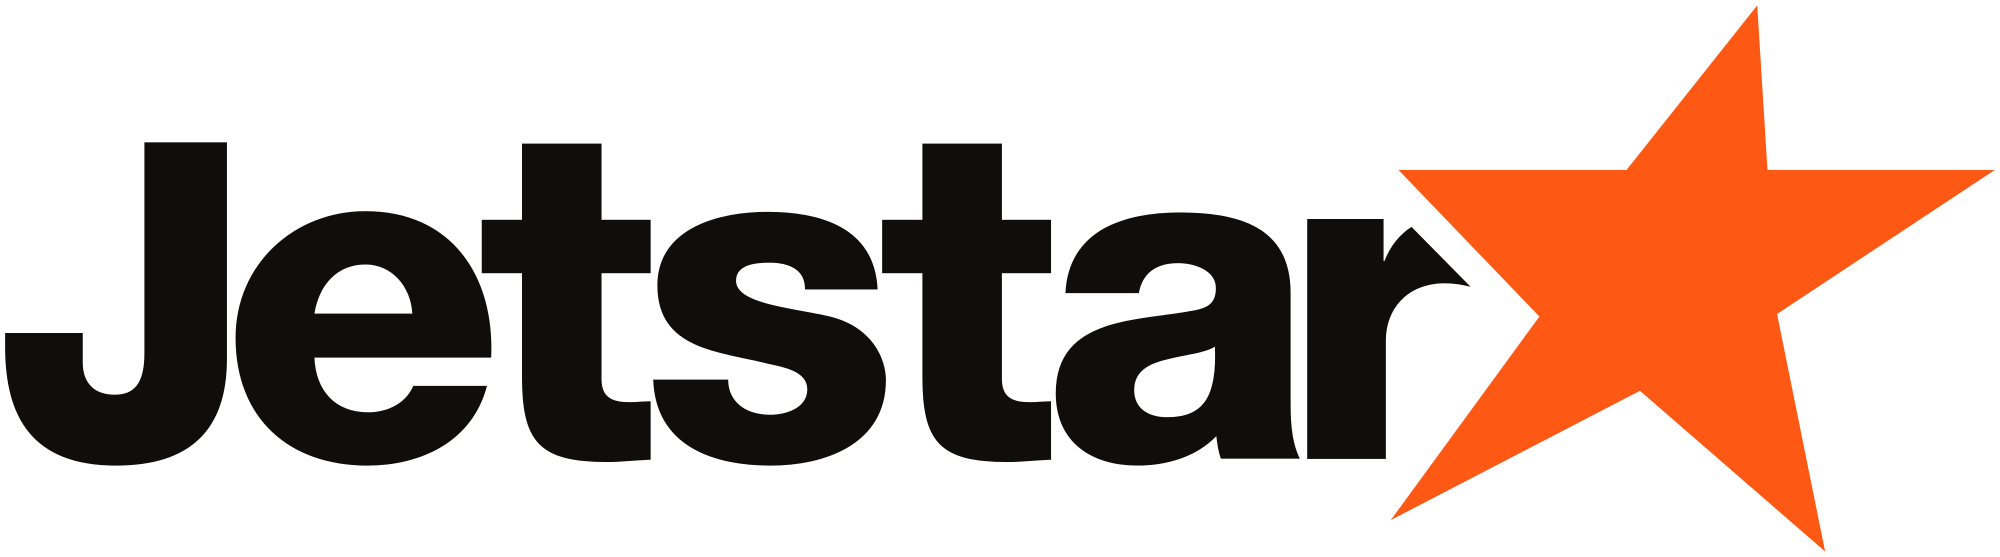 Jetstar Brand Logo